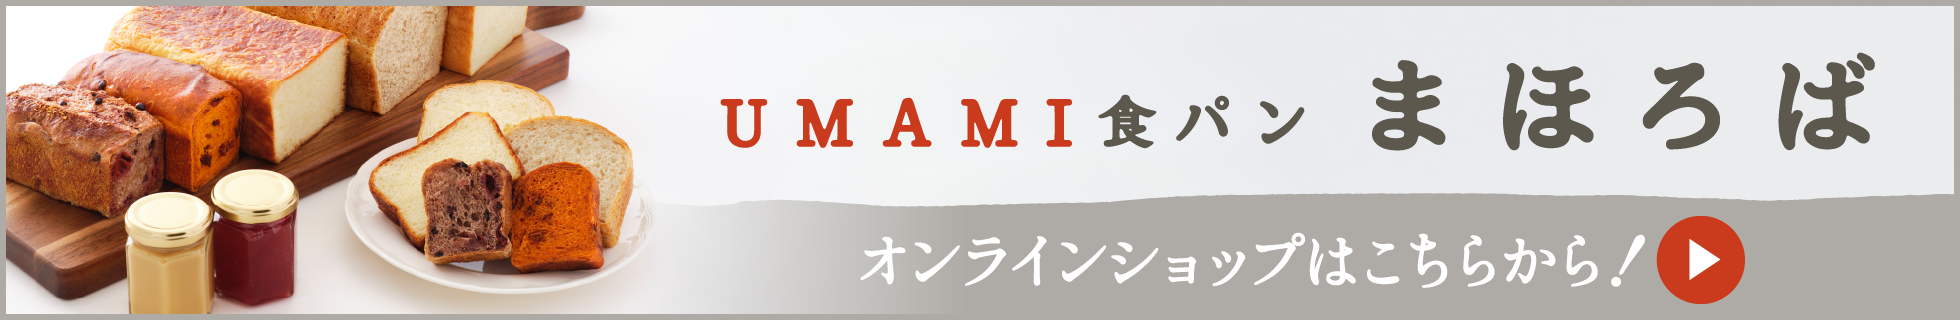 「UMAMI食パン まほろば」運営会社 株式会社じゃじゃ馬のWebサイト